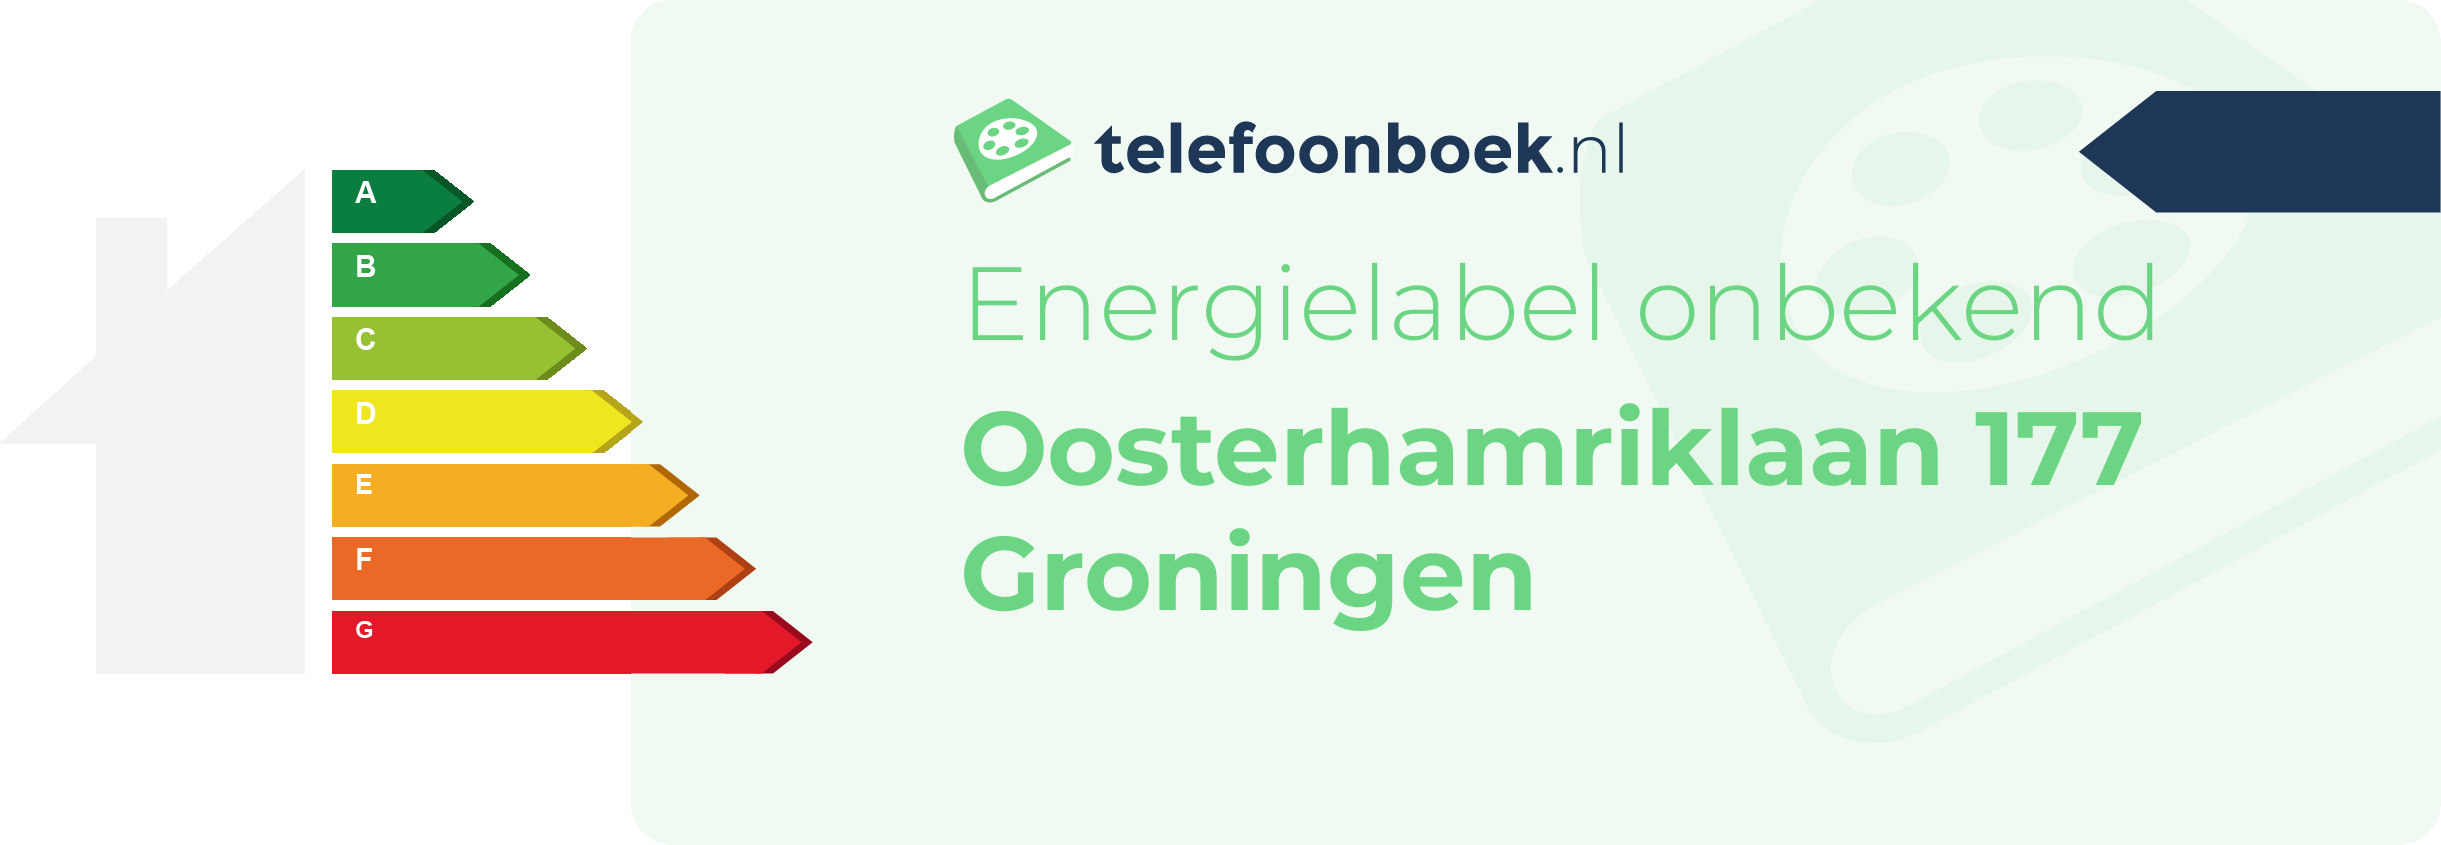 Energielabel Oosterhamriklaan 177 Groningen